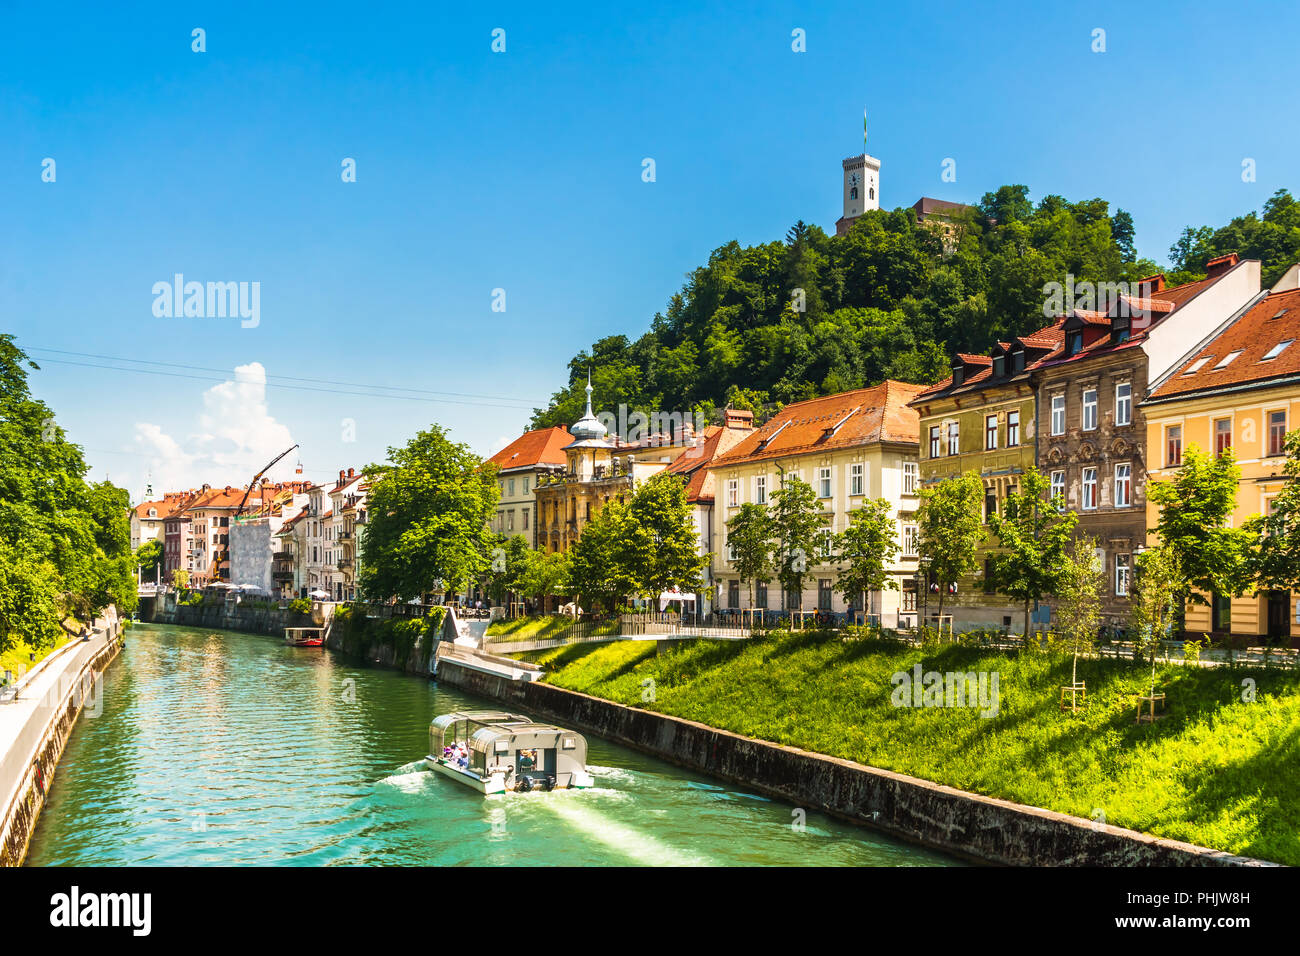 Medieval buildings and ljubljanica river in Ljubljana - Slovenia Stock Photo